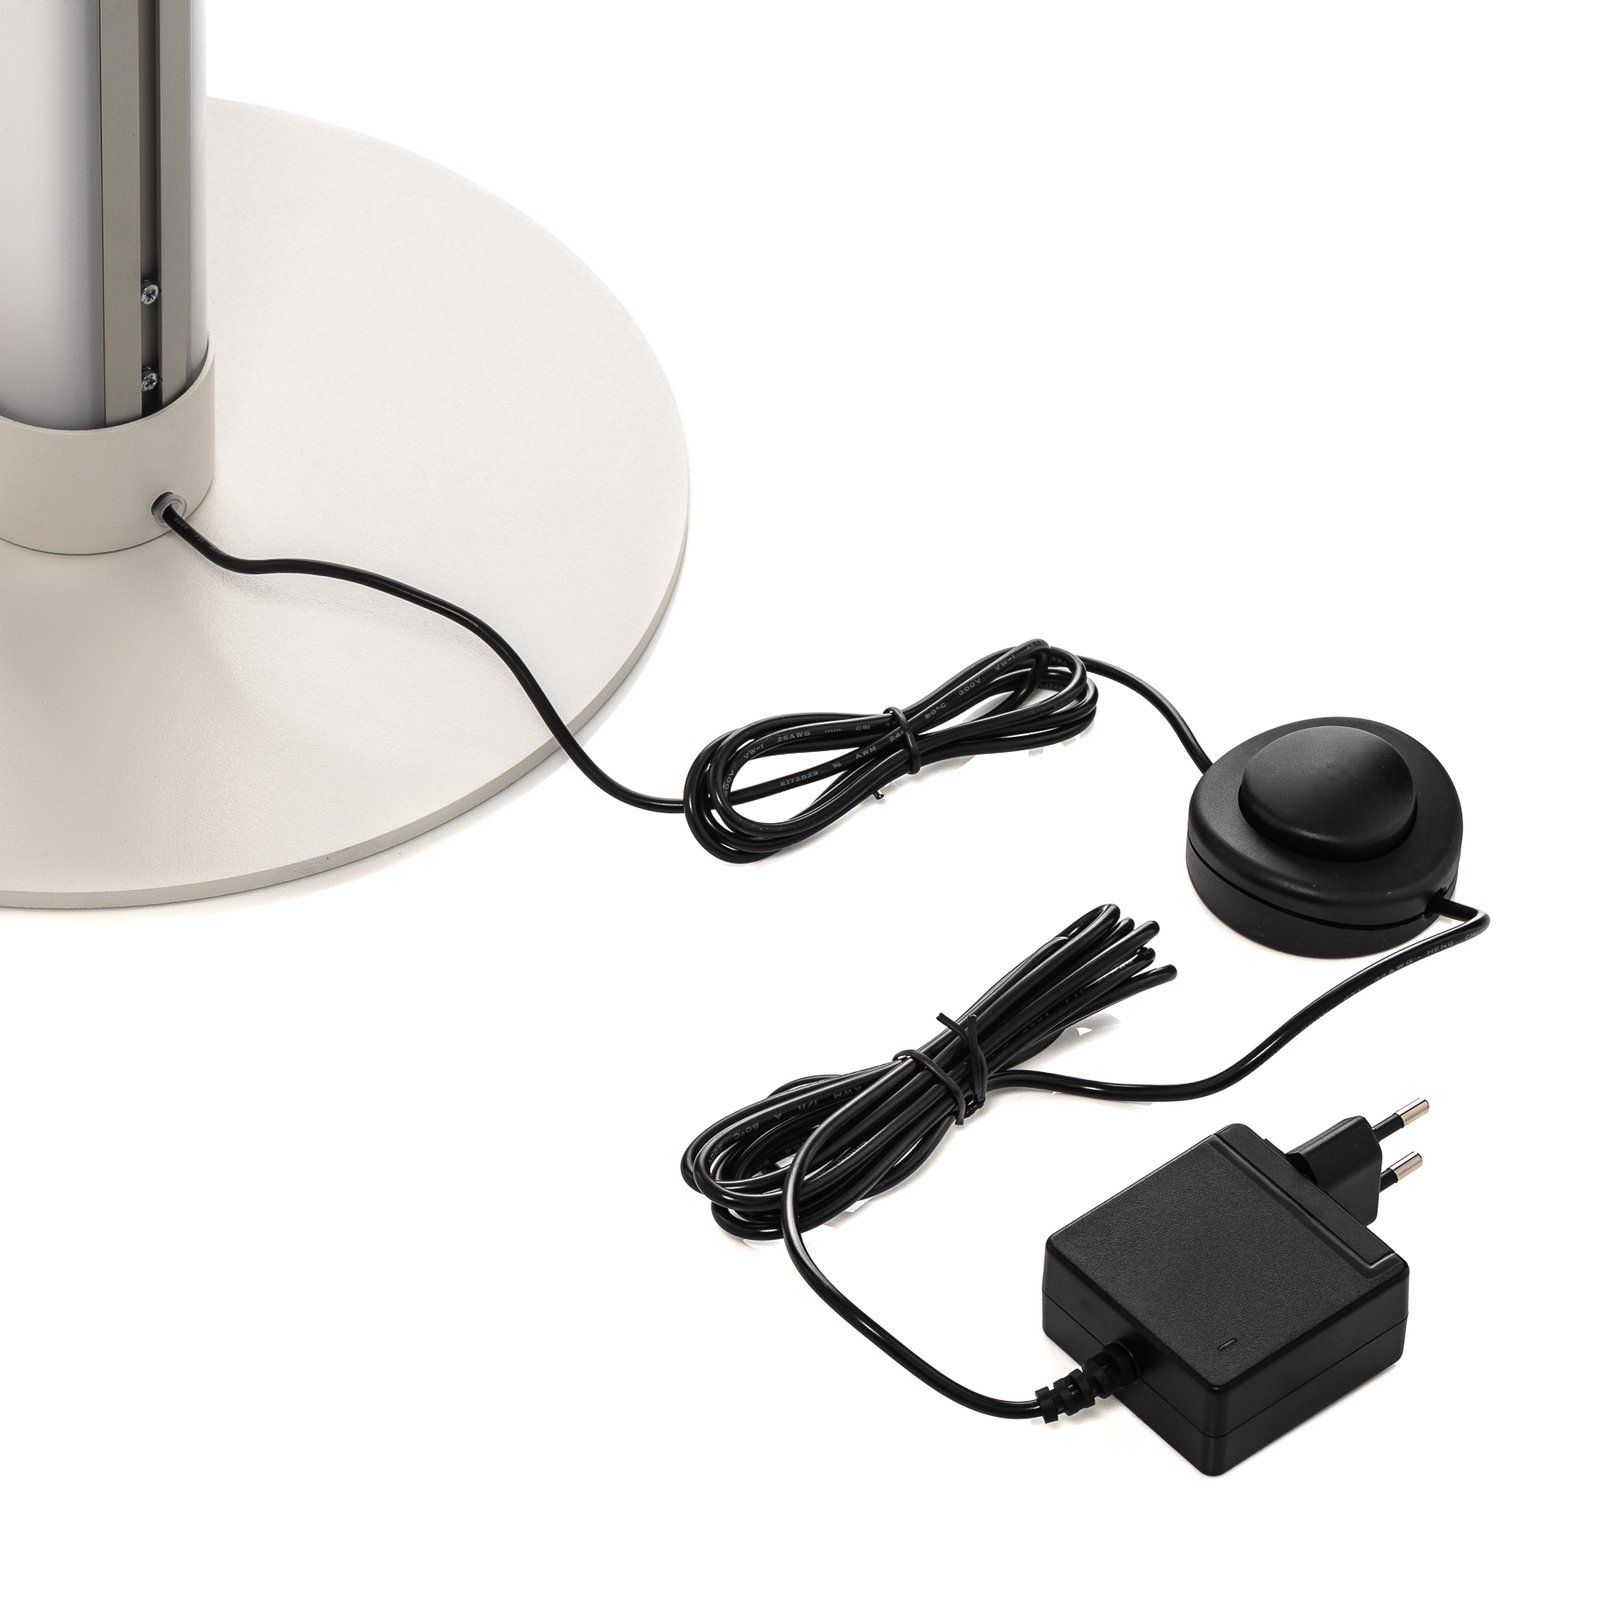 Pirgos LED podna lampa sa regulatorom, visina 180 cm